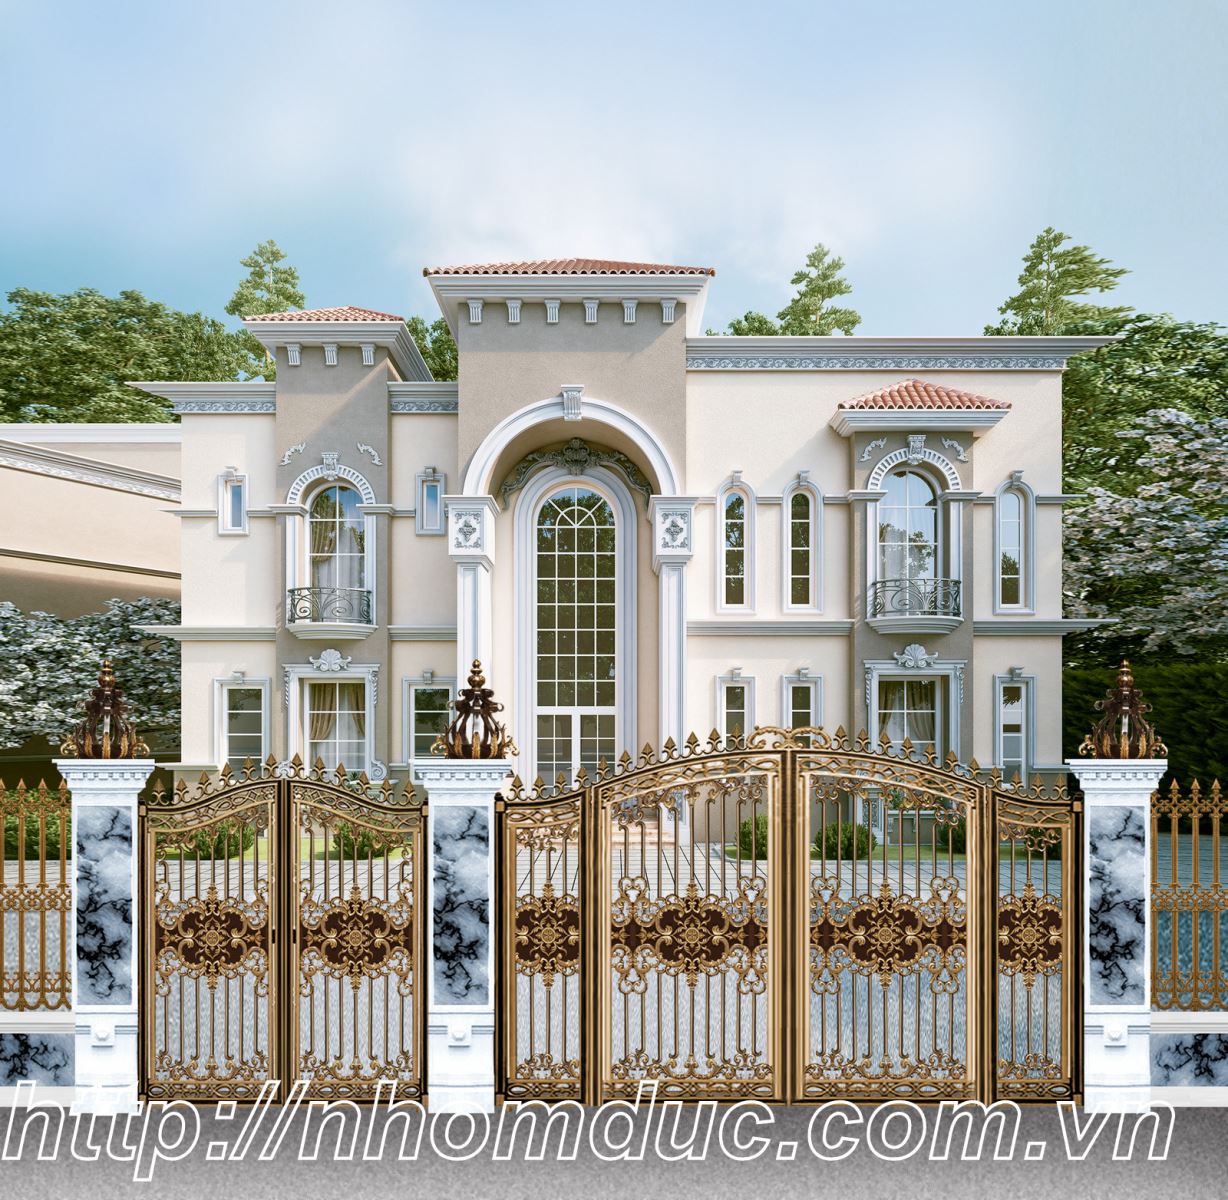 chuyên sản xuất cổng nhôm đúc đẹp thể hiện đẳng cấp cổng nhôm đúc biệt thự hàng đầu tại Việt Nam